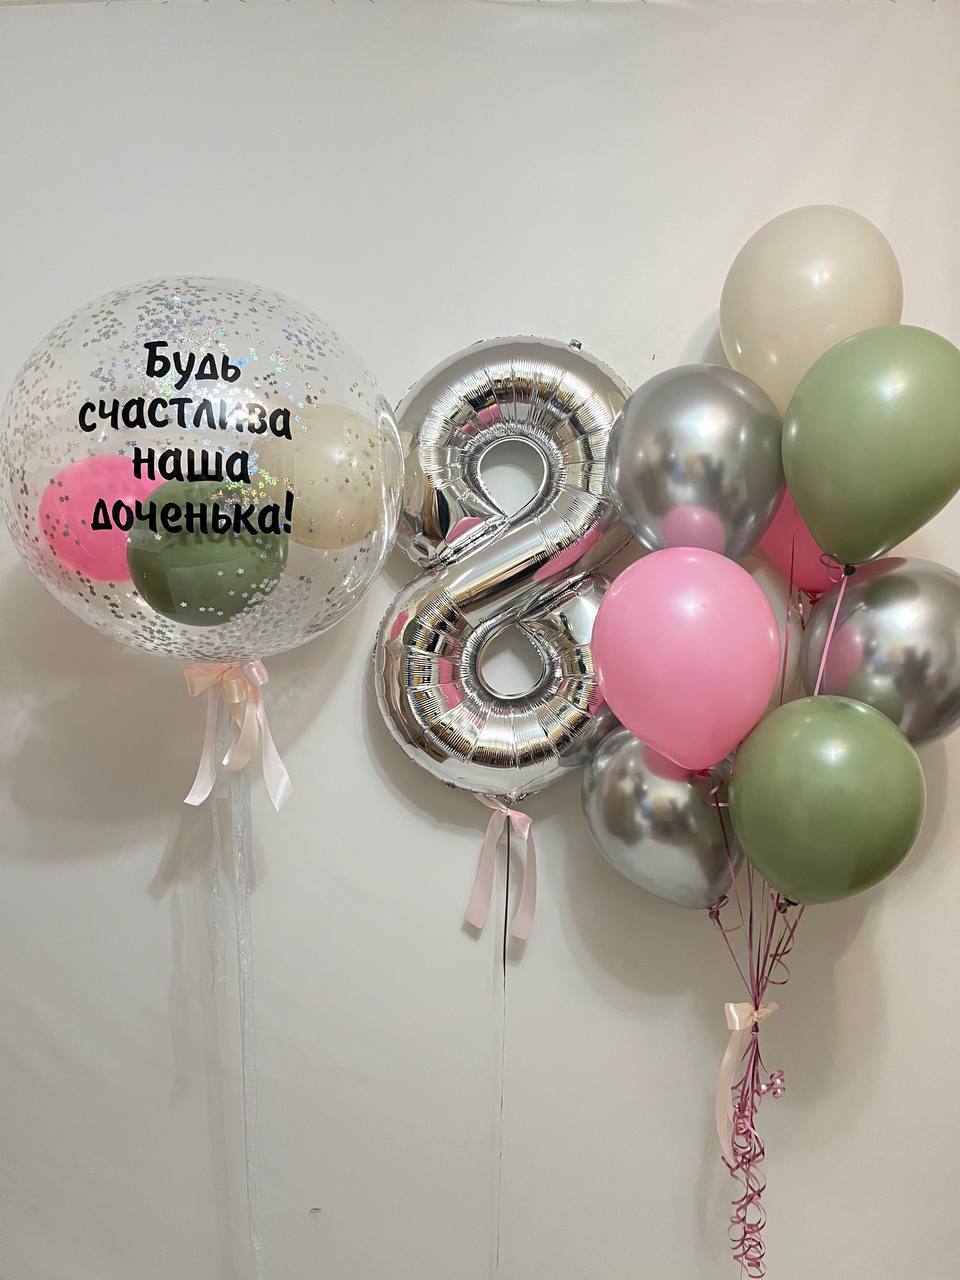 Композиция из воздушных шариков от 5000 руб. Сет №707 с цифрой и фонтанами. Южно-Сахалинск. Фабрика Смеха